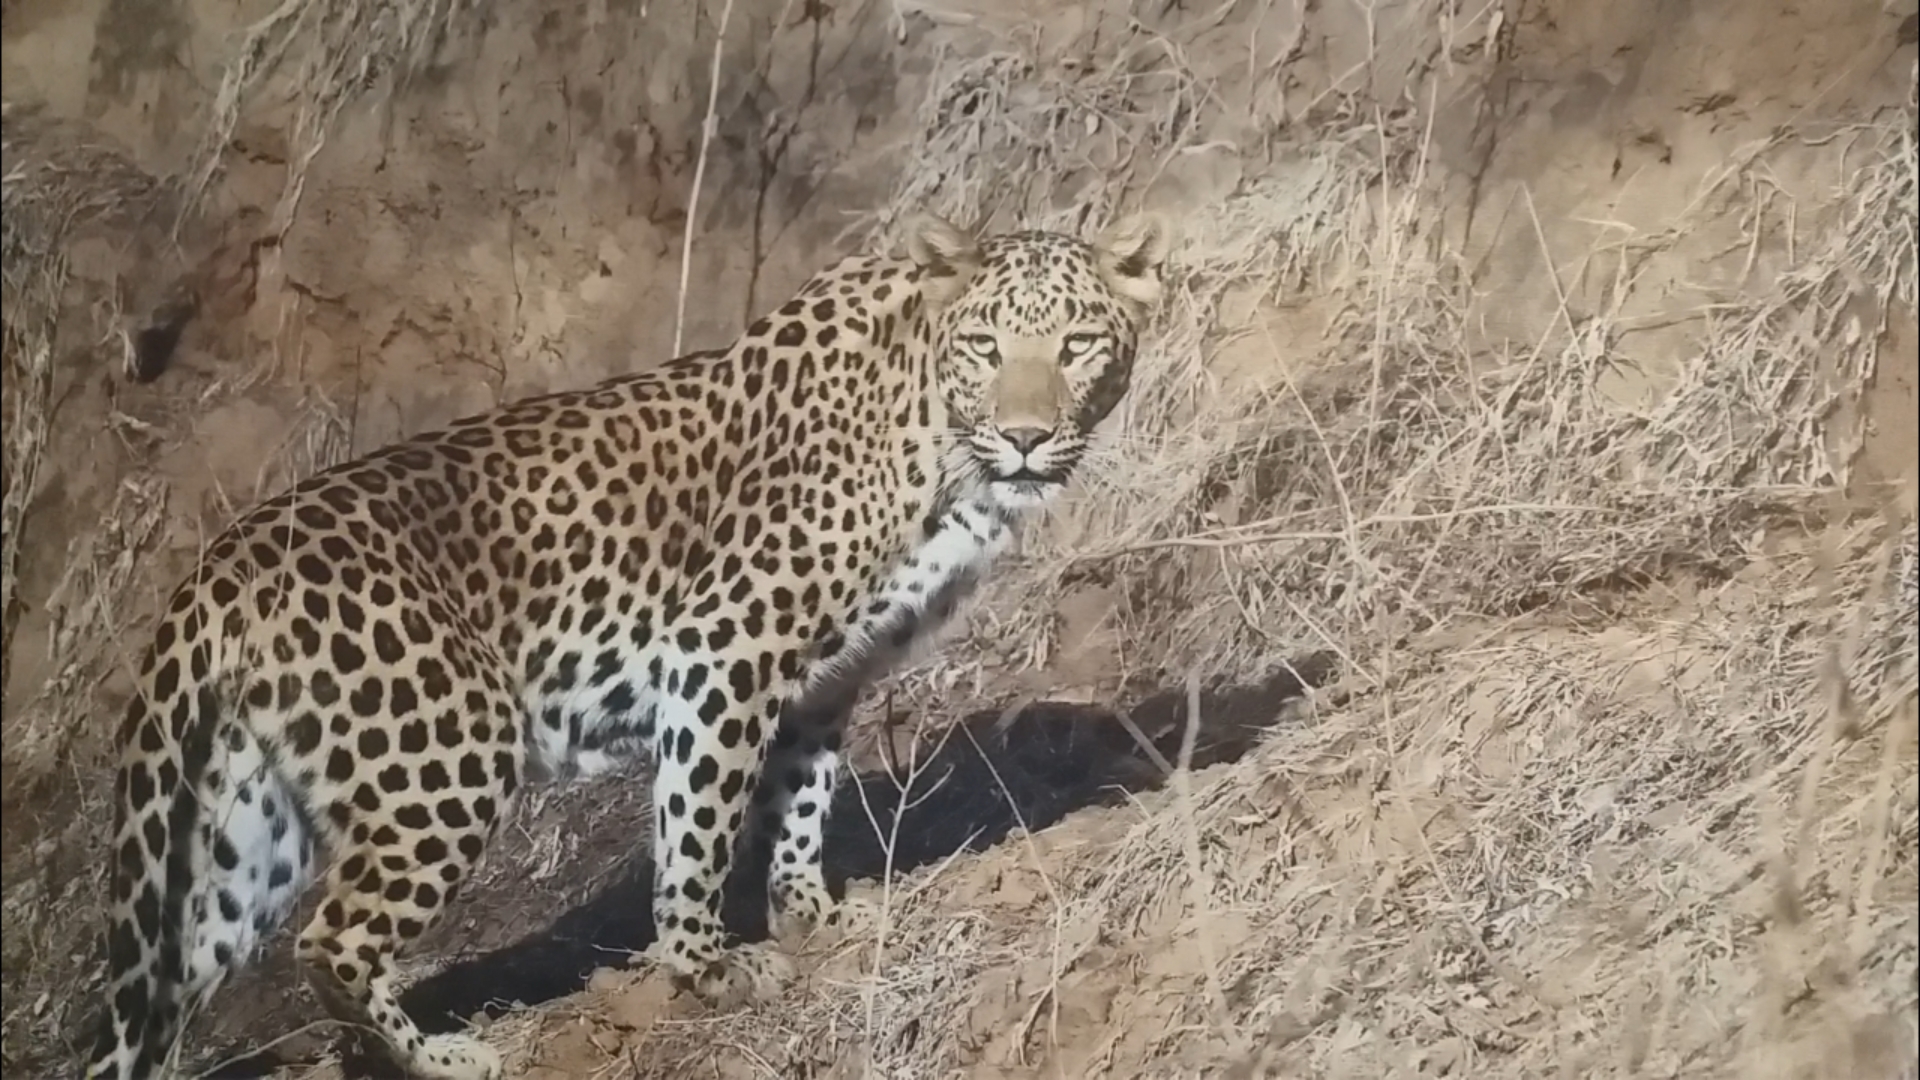 Jhalana Leopard Safari